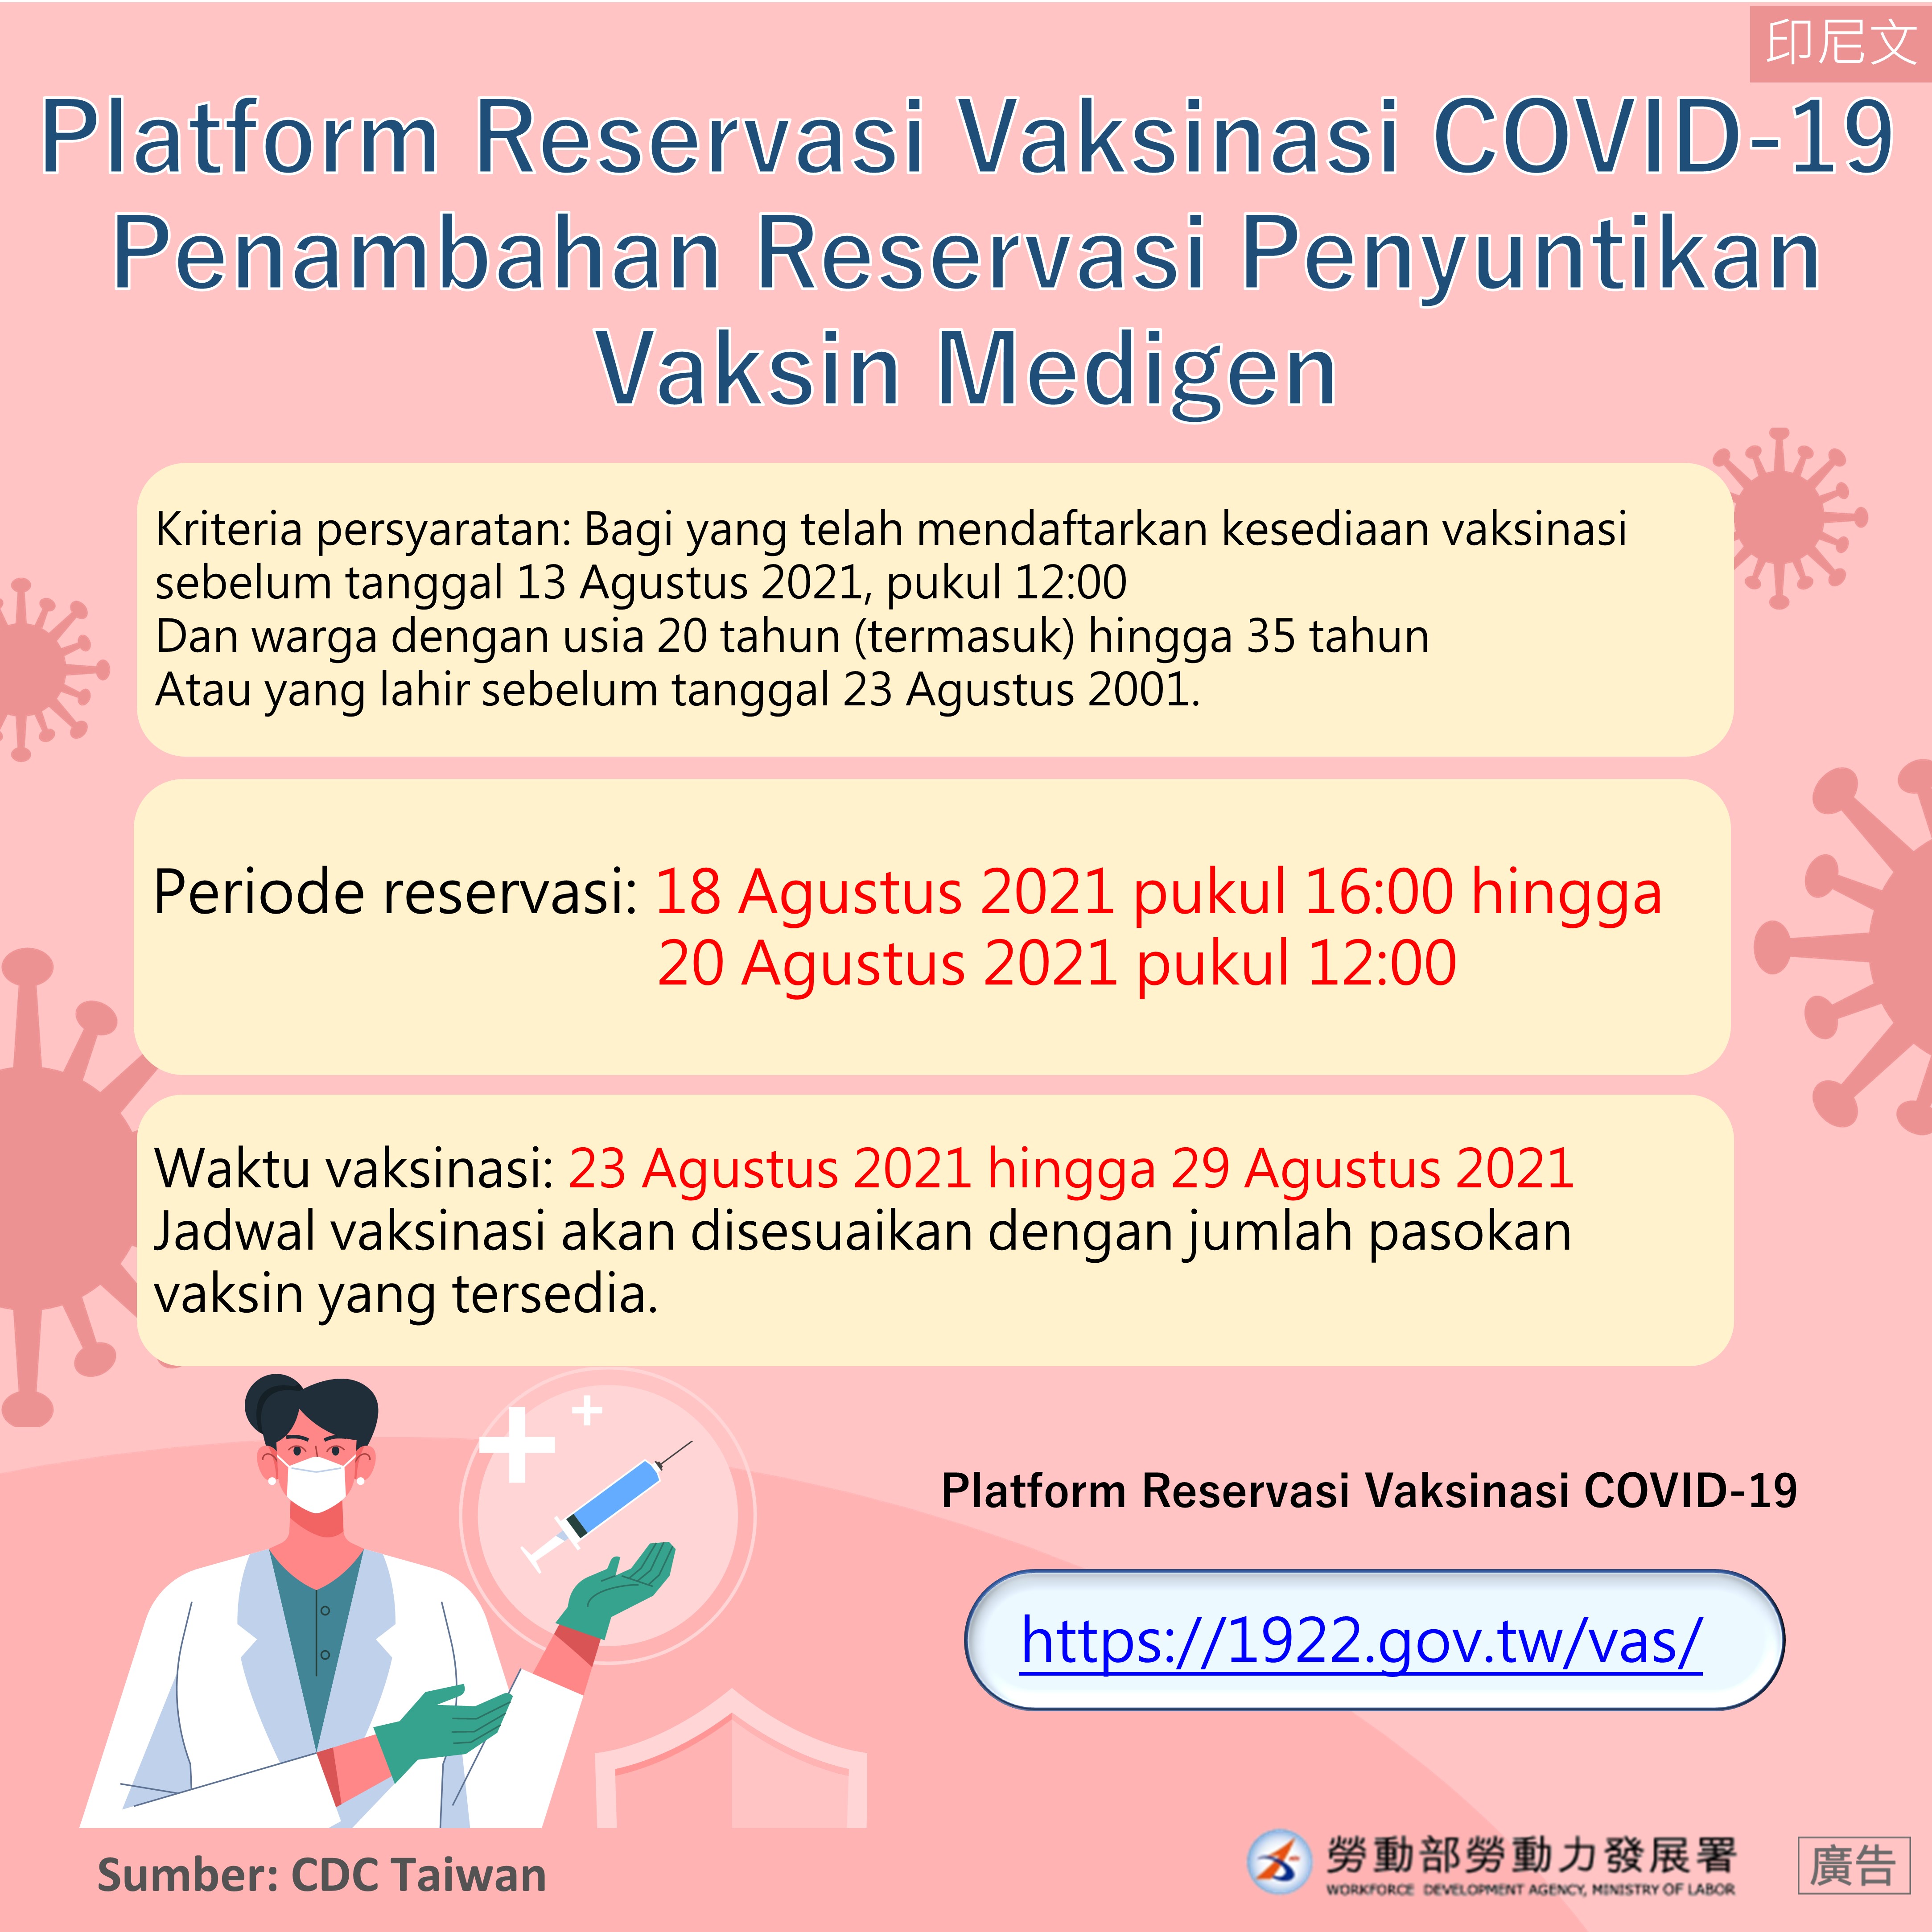 Platform perjanjian vaksin menambahkan jenis vaksin Medigen. Sumber: Biro Tenaga Kerja Taichung